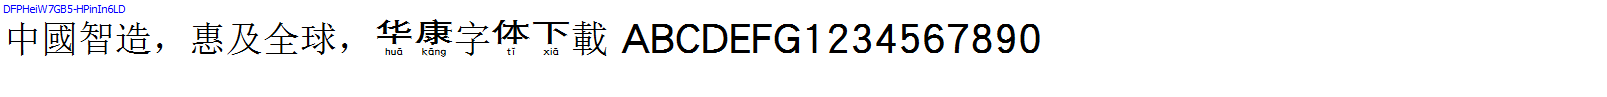 華康字體DFPHeiW7GB5-HPinIn6LD.TTF